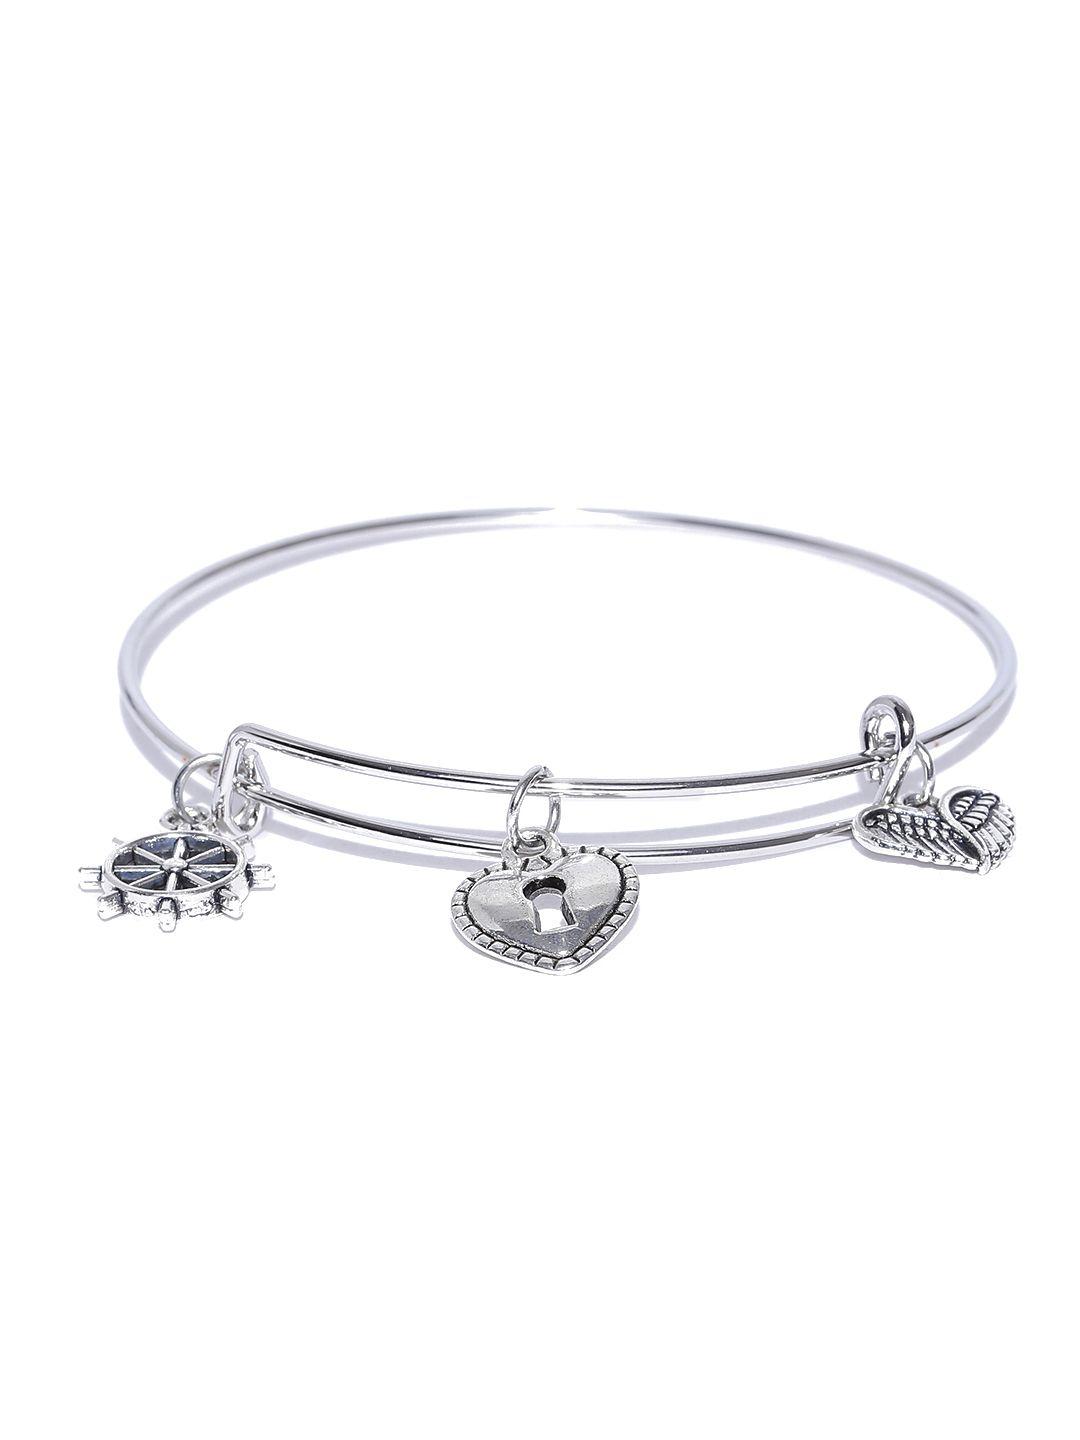 youbella oxidised silver-toned charm bracelet